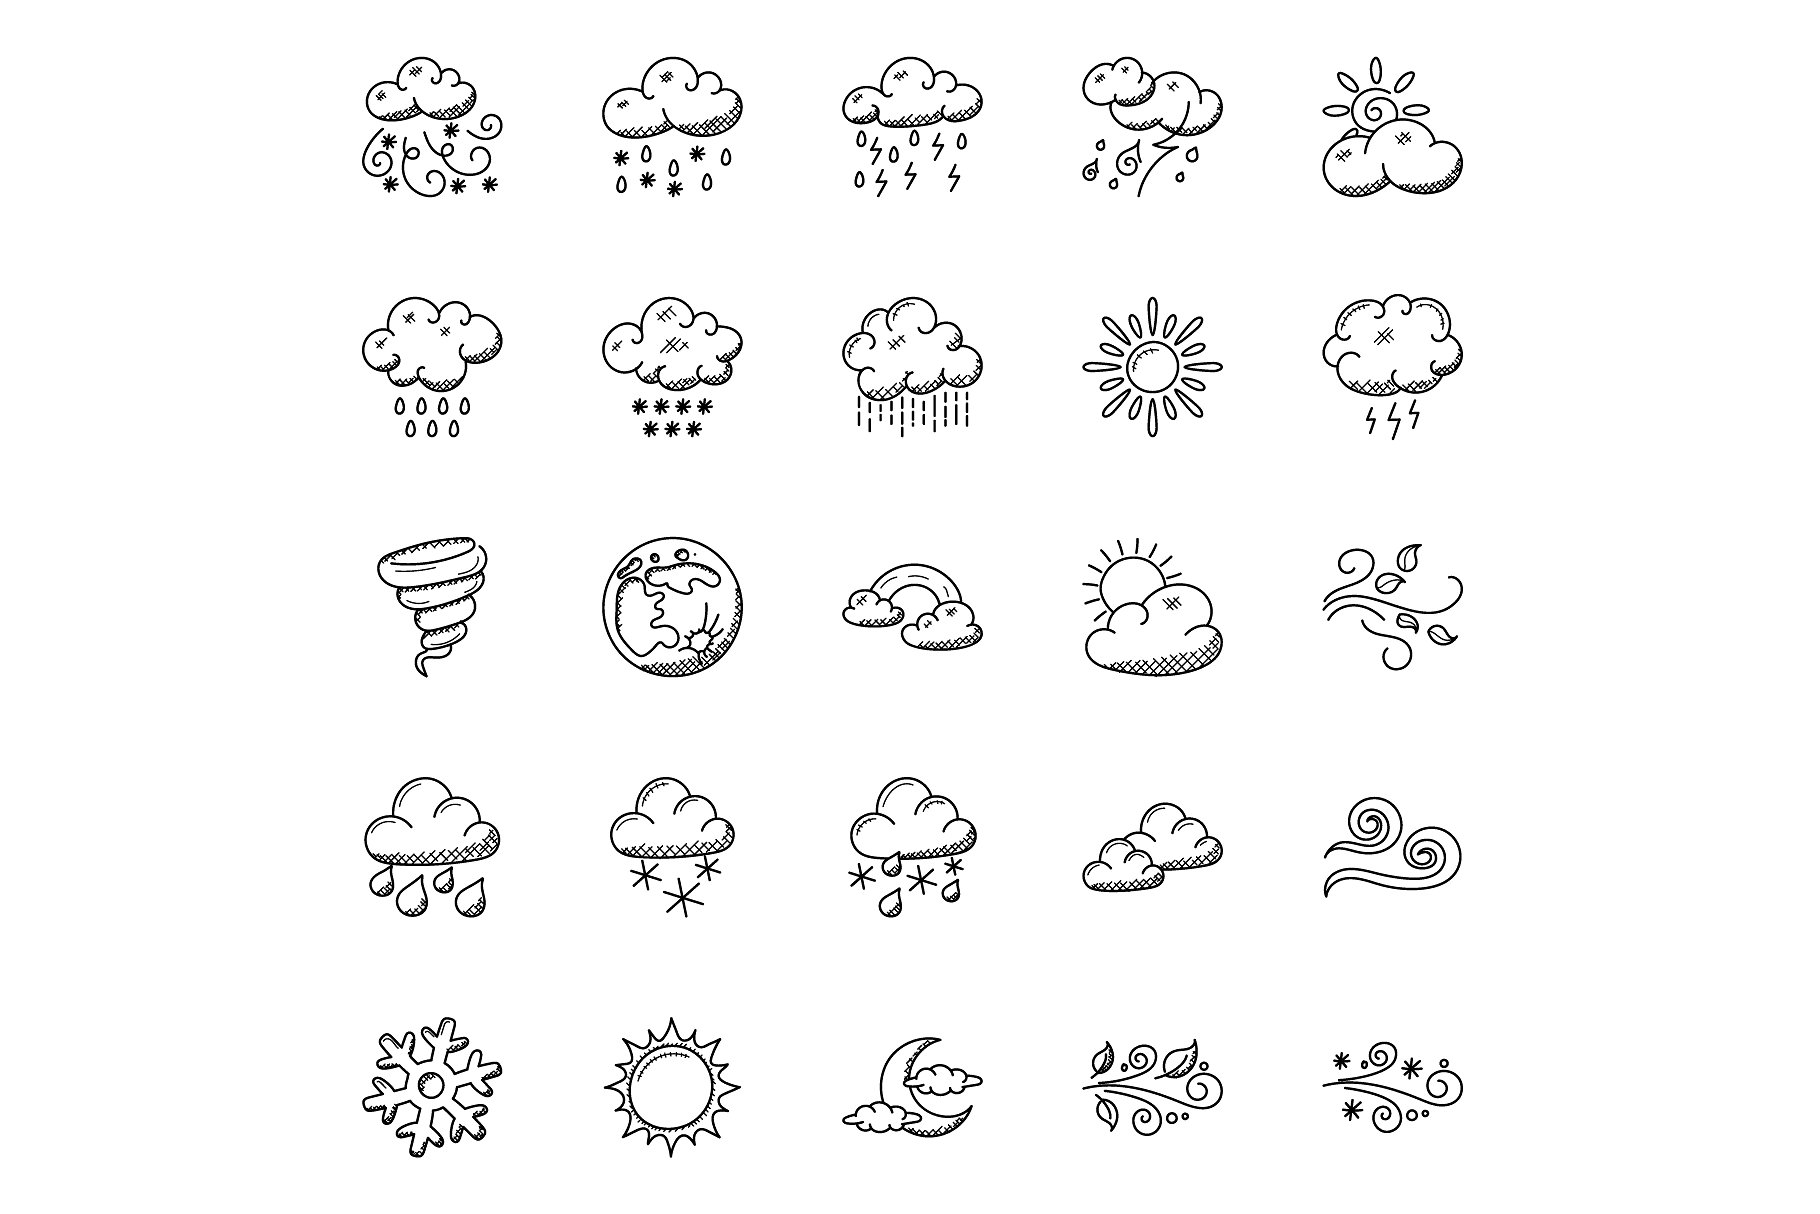 50个手绘涂鸦天气图标下载 50 Hand Drawn Doodle Weather Icons设计素材模板